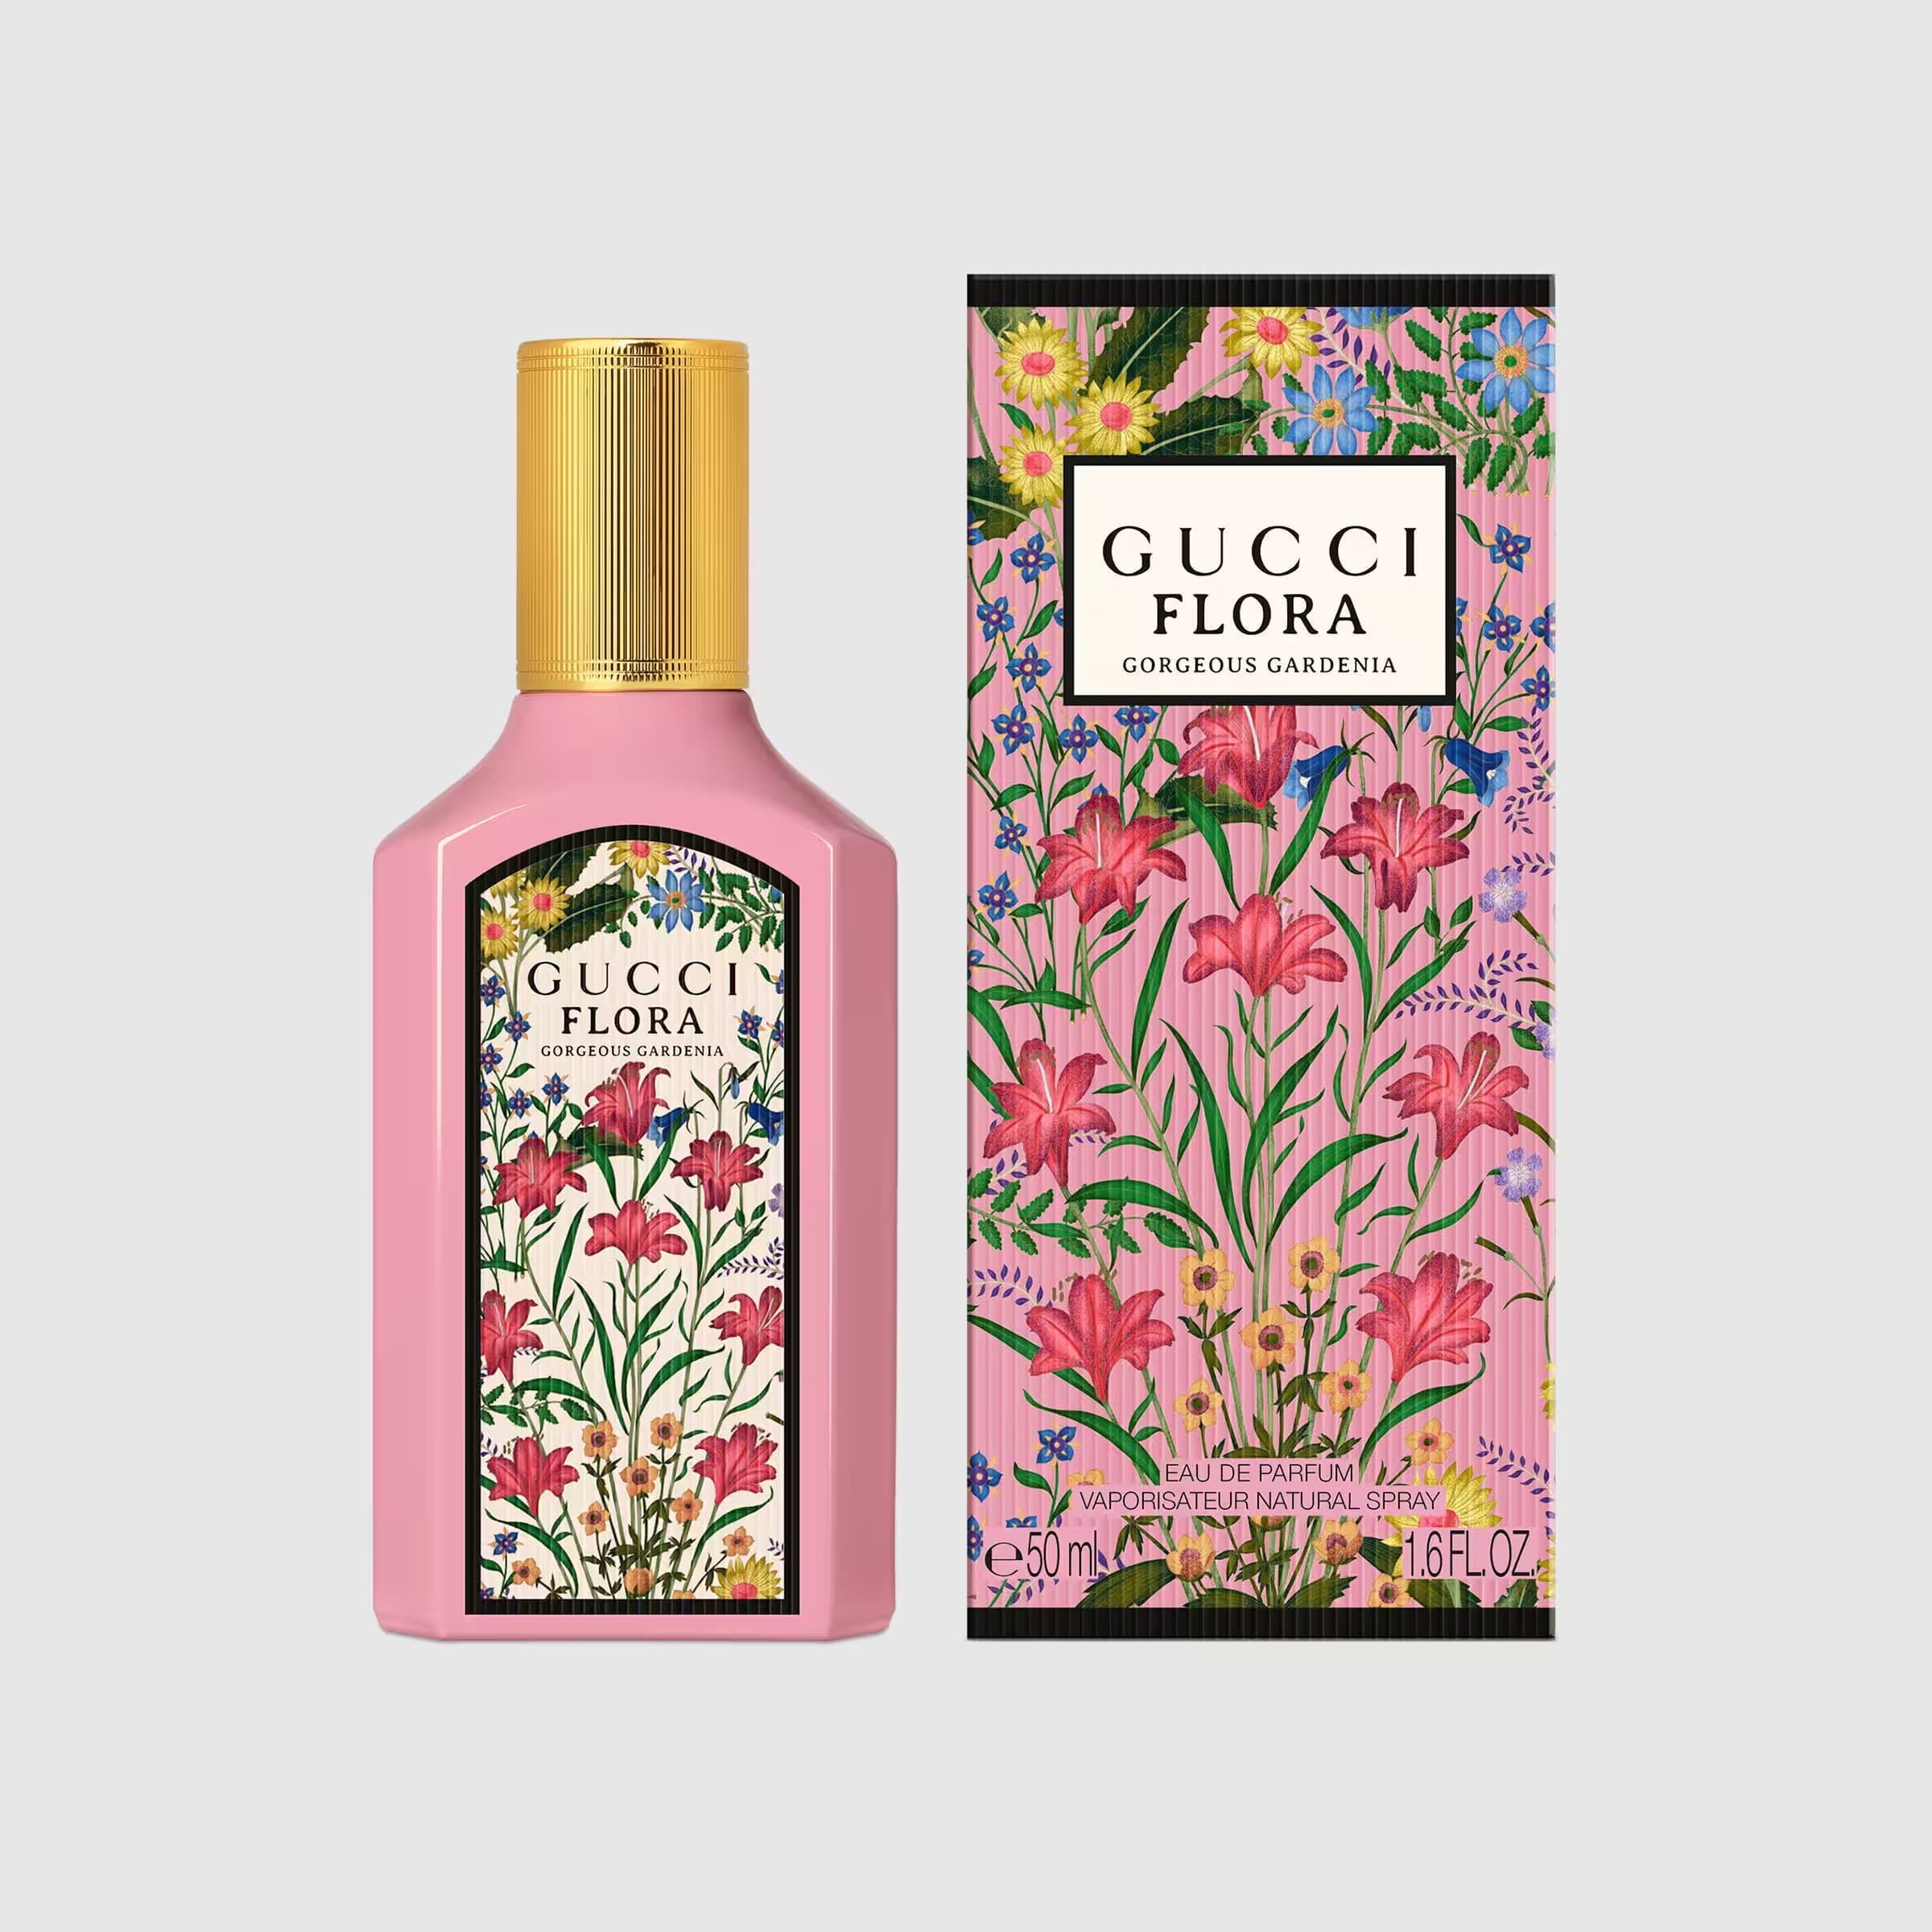 GUCCI Flora Gorgeous Gardenia Wome Eau De Parfum Spray 1.6 oz - Walmart.com